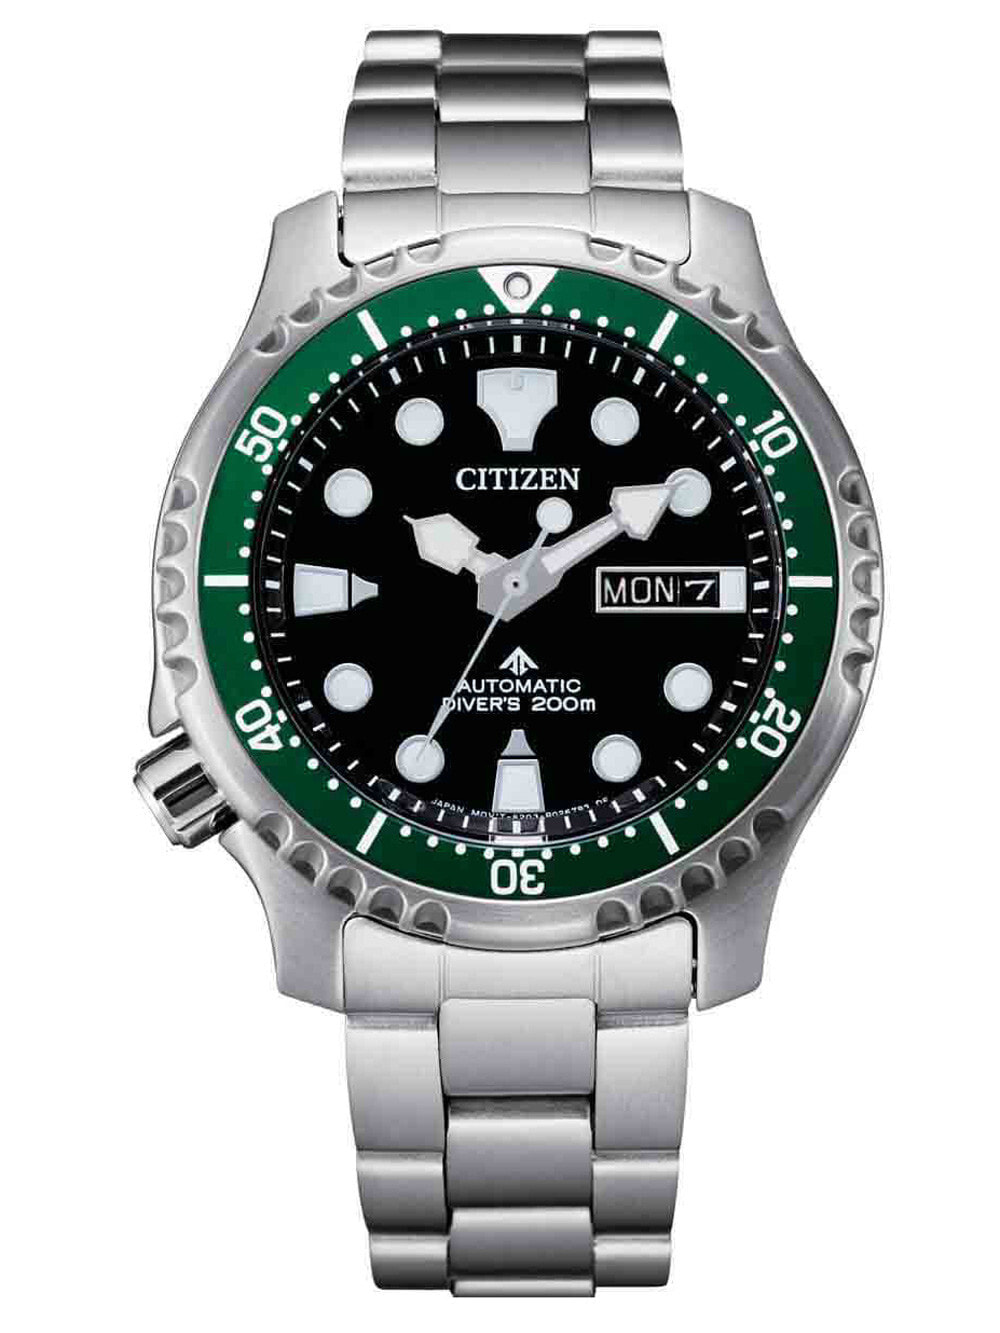 Мужские наручные часы с серебряным браслетом Citizen NY0084-89E Promaster automatic diver 41mm 20ATM